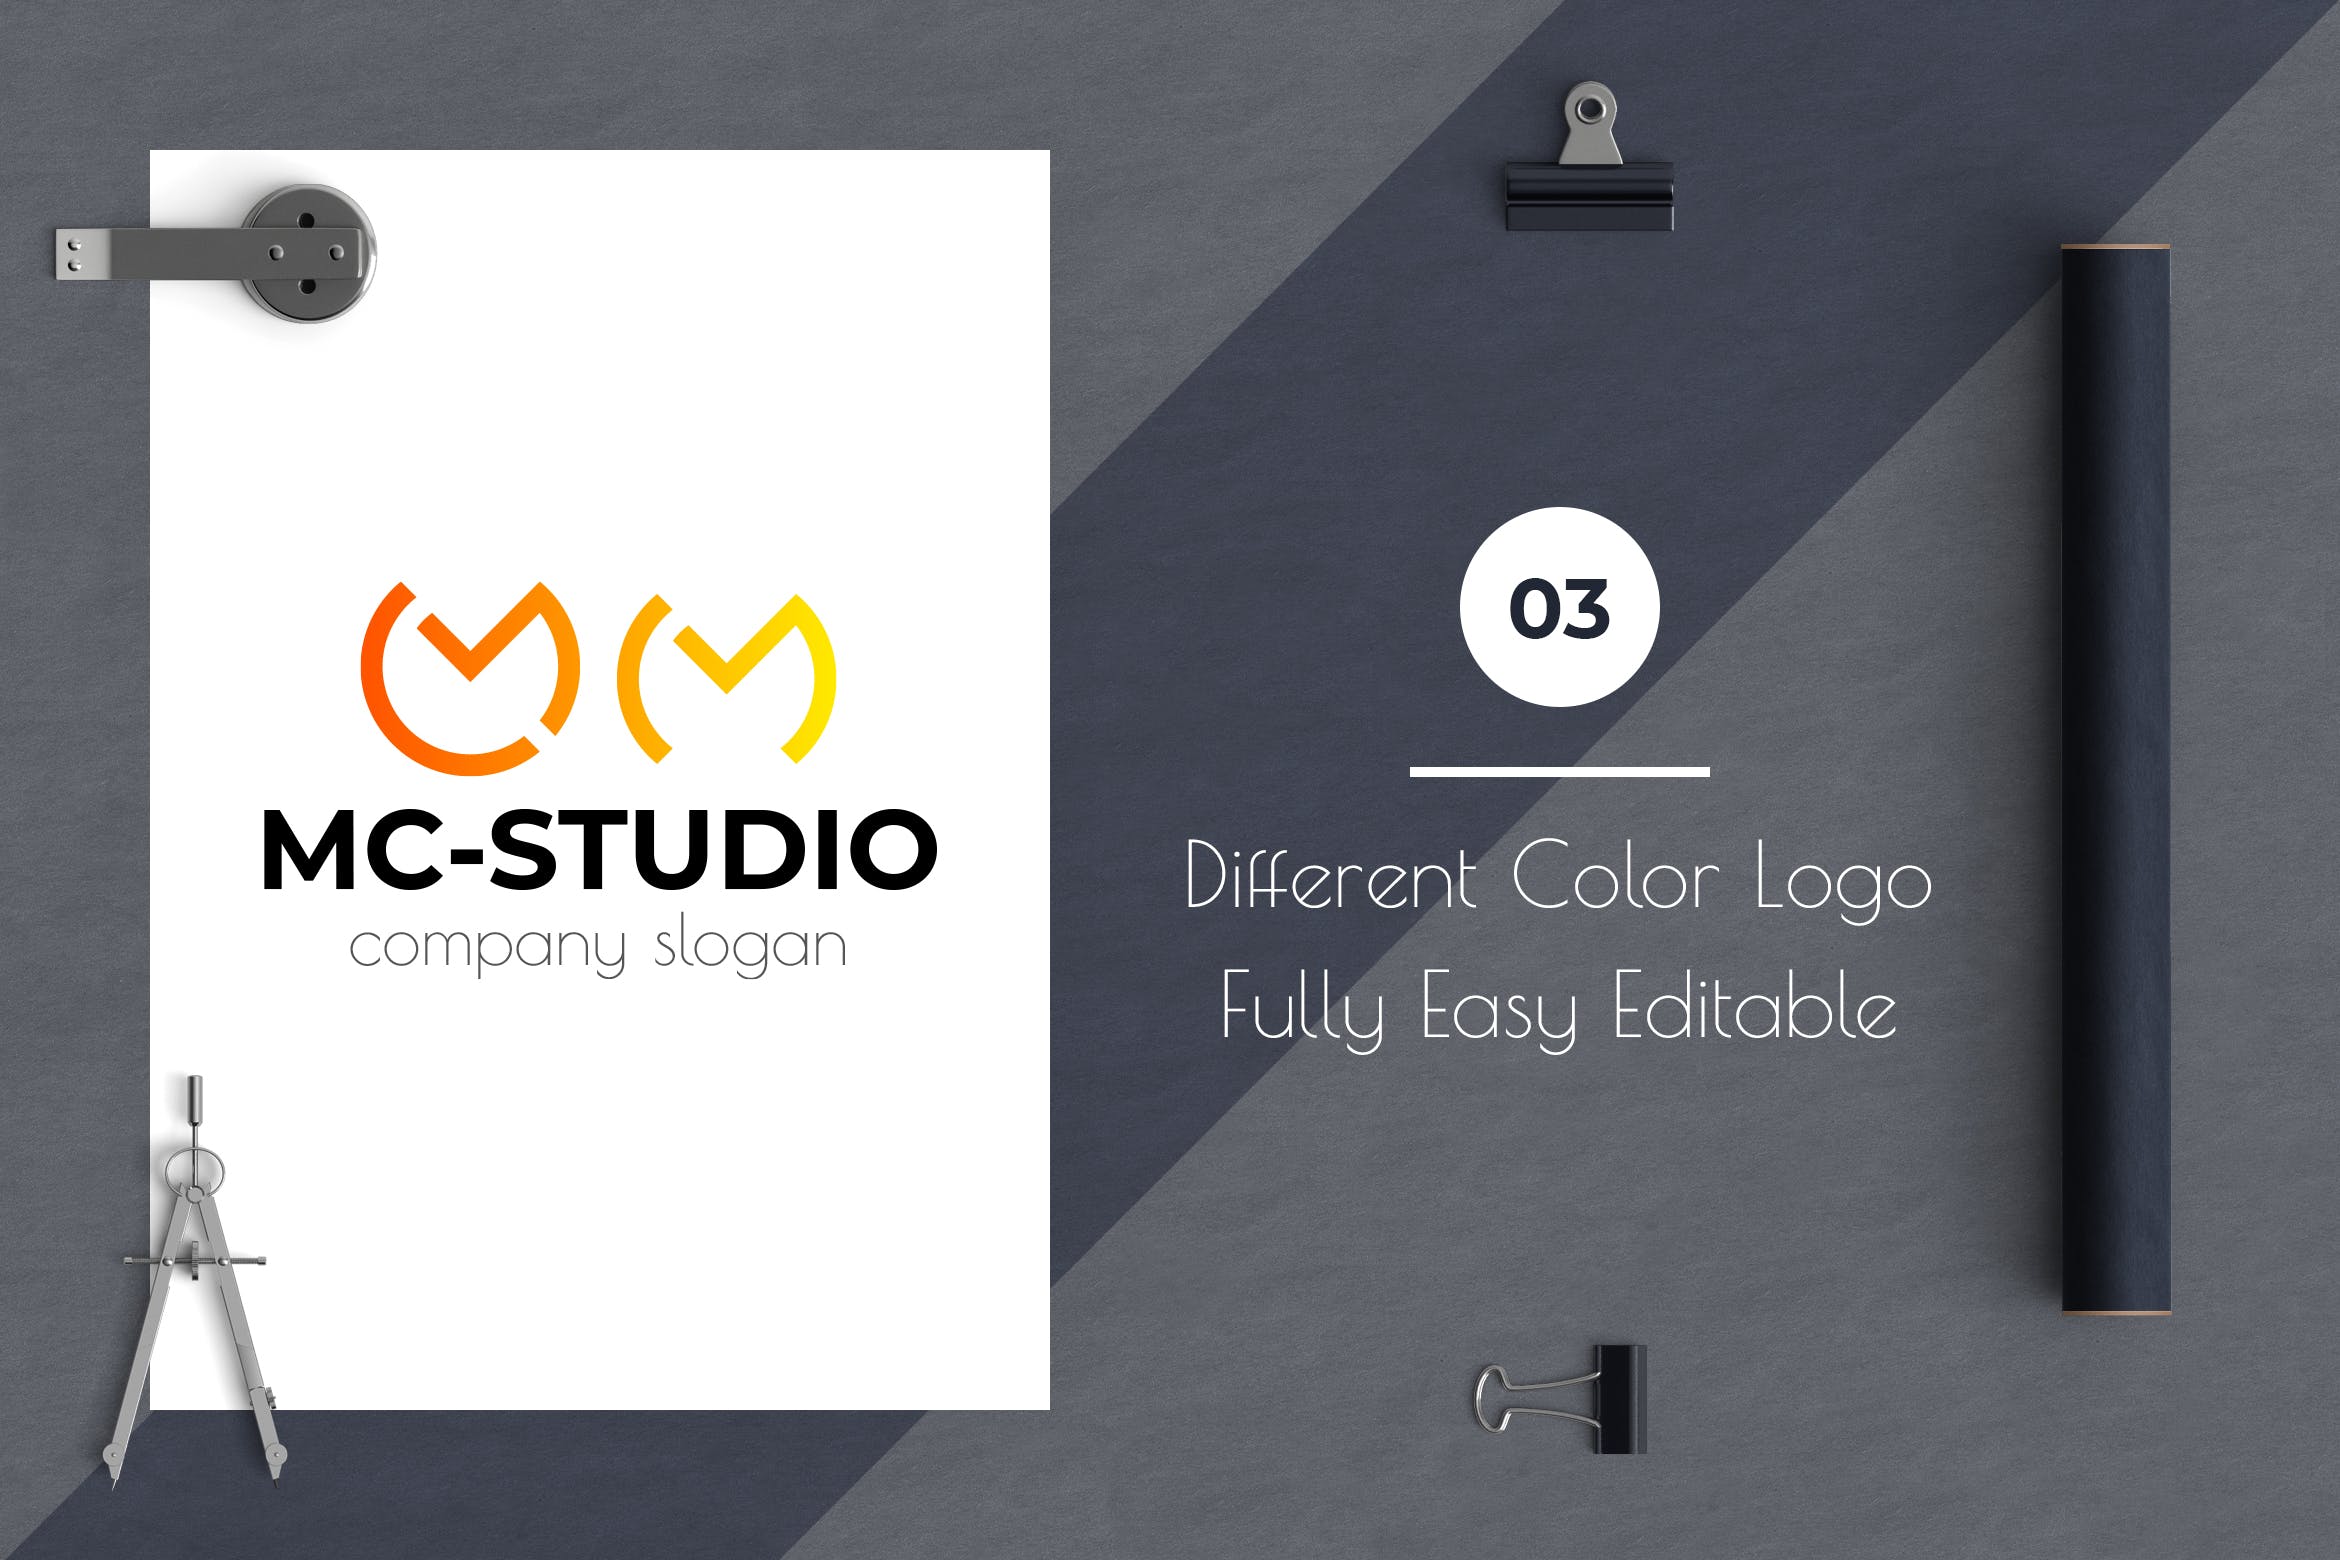 创意工作室图形Logo设计素材库精选模板 Mc Studio Creative Logo Template插图